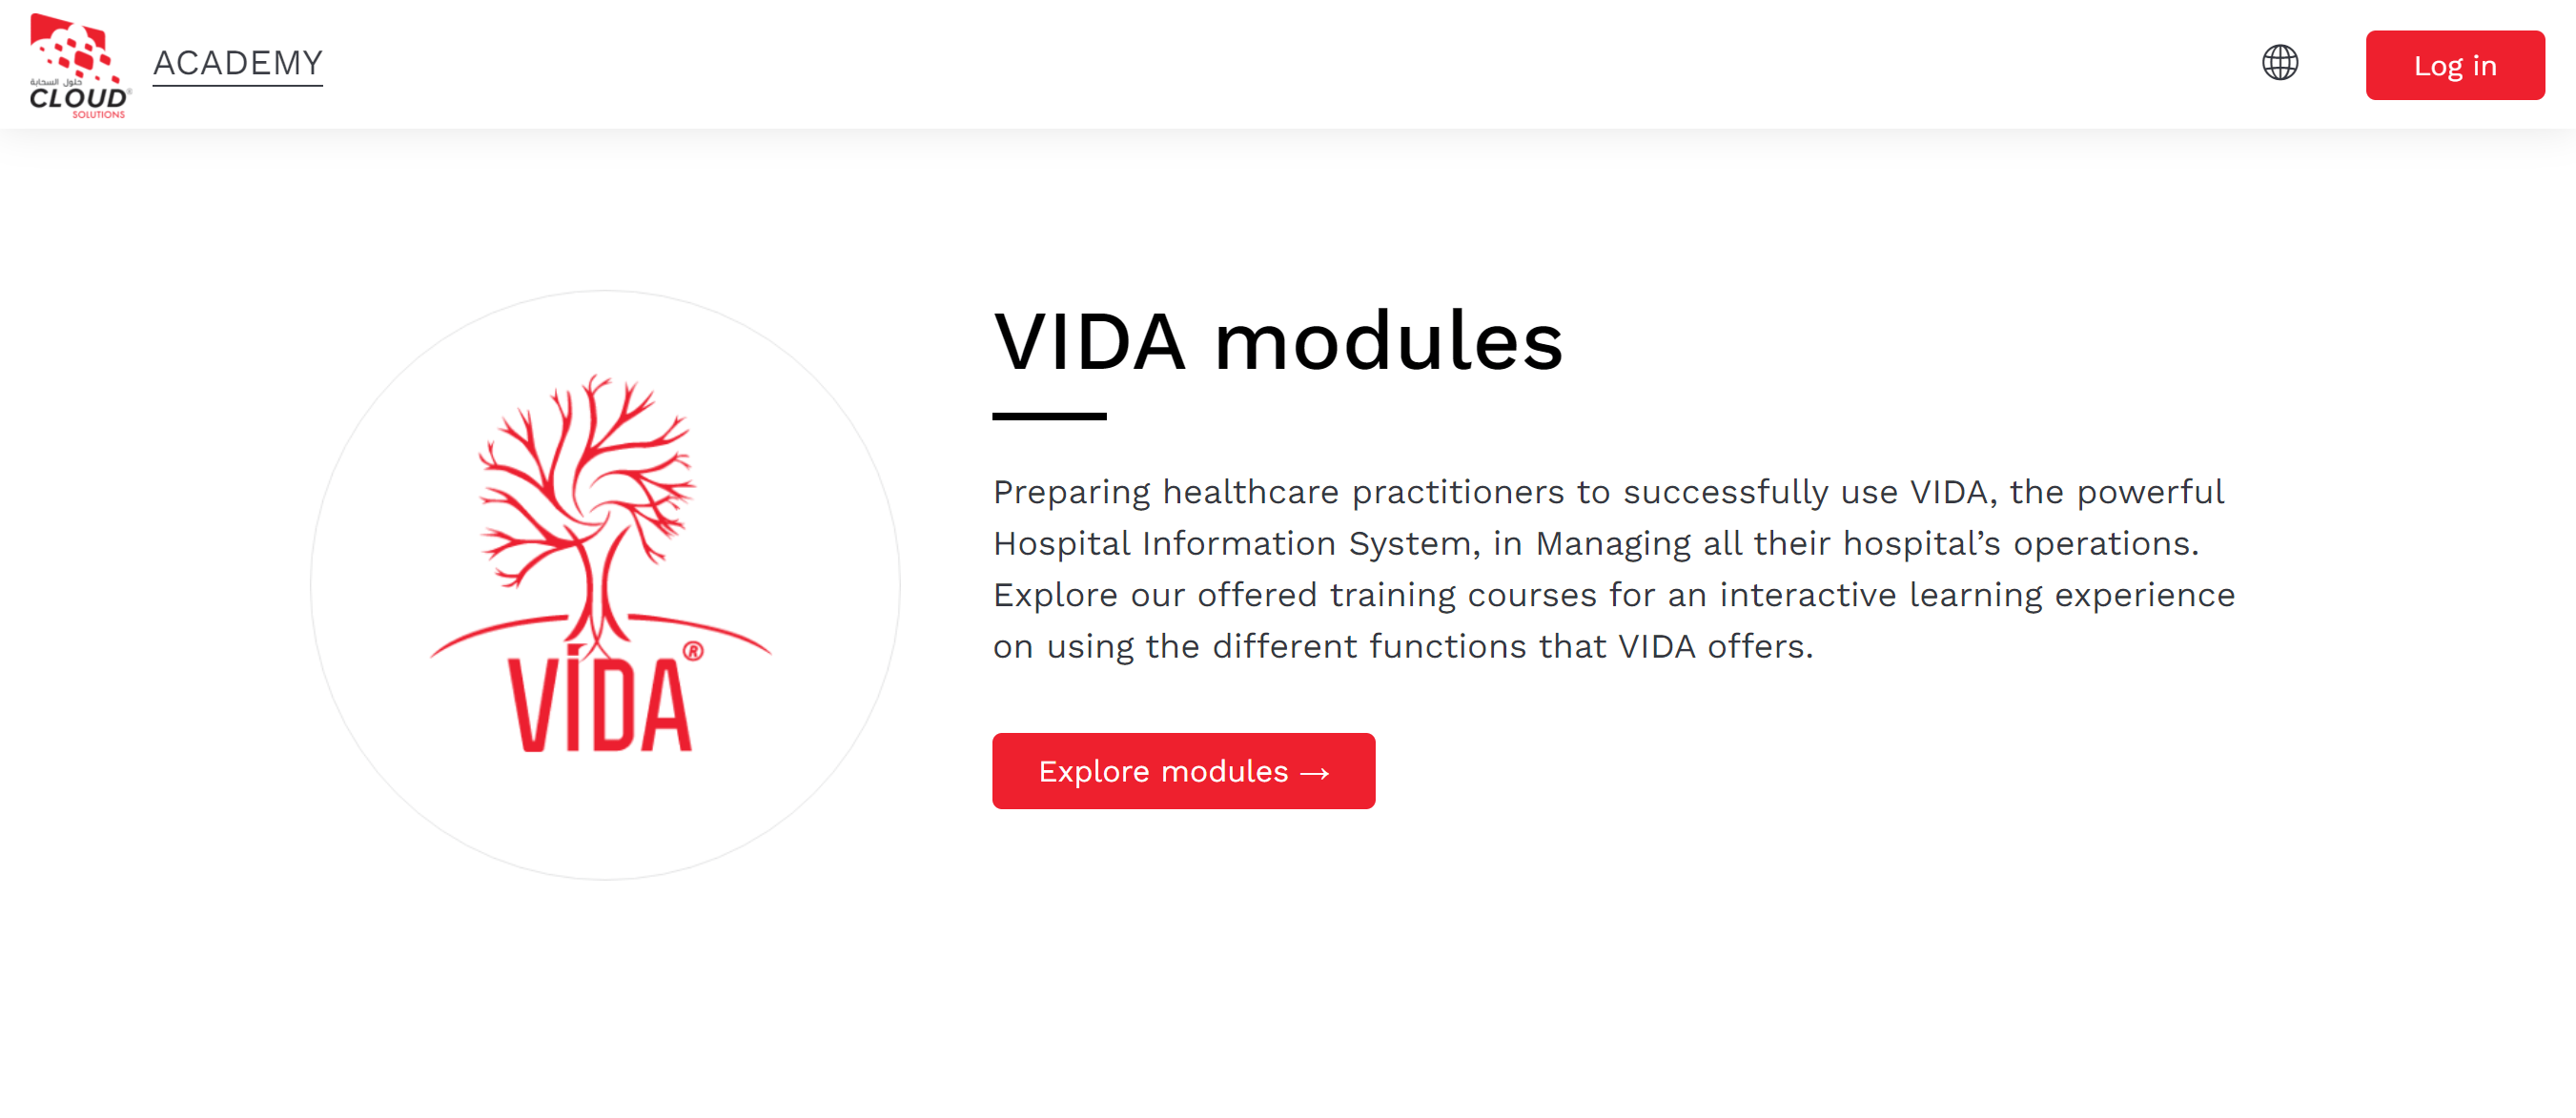 La schermata introduttiva ai moduli VIDA di Cloud Solutions Academy, che spiega di cosa trattano i moduli e ha un pulsante di invito all'azione che dice Esplora moduli